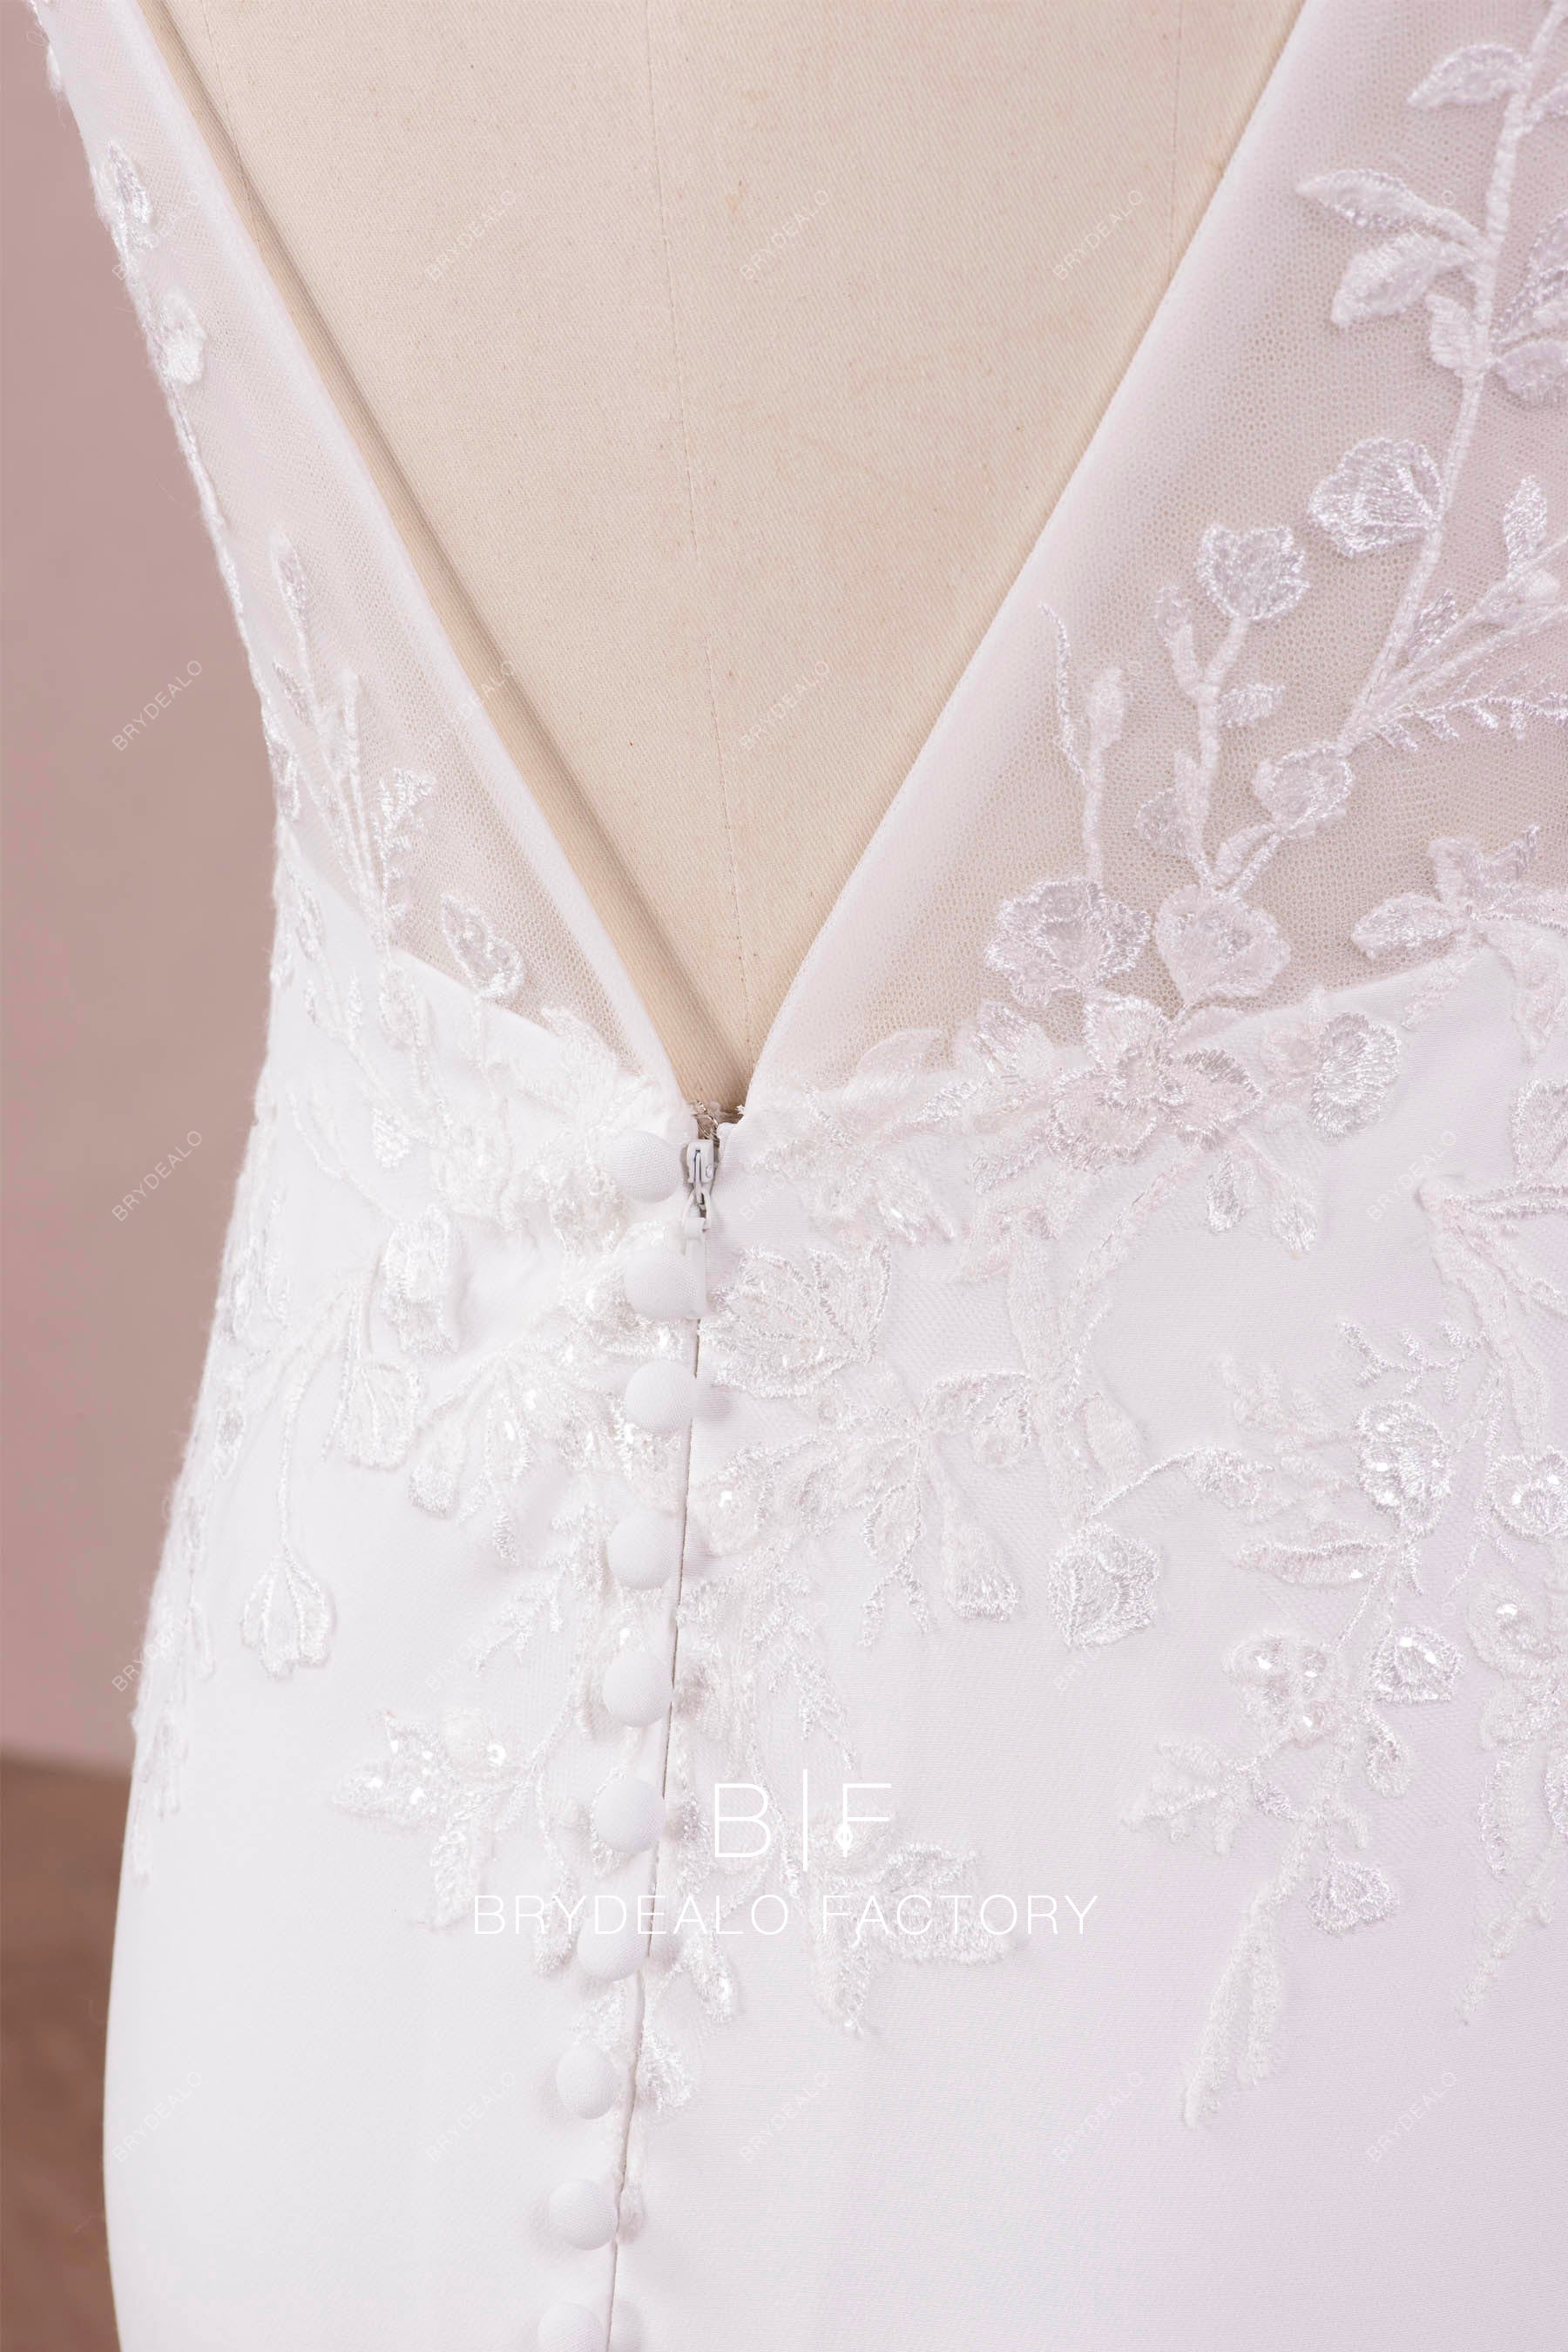 V-buttoned back wedding dress